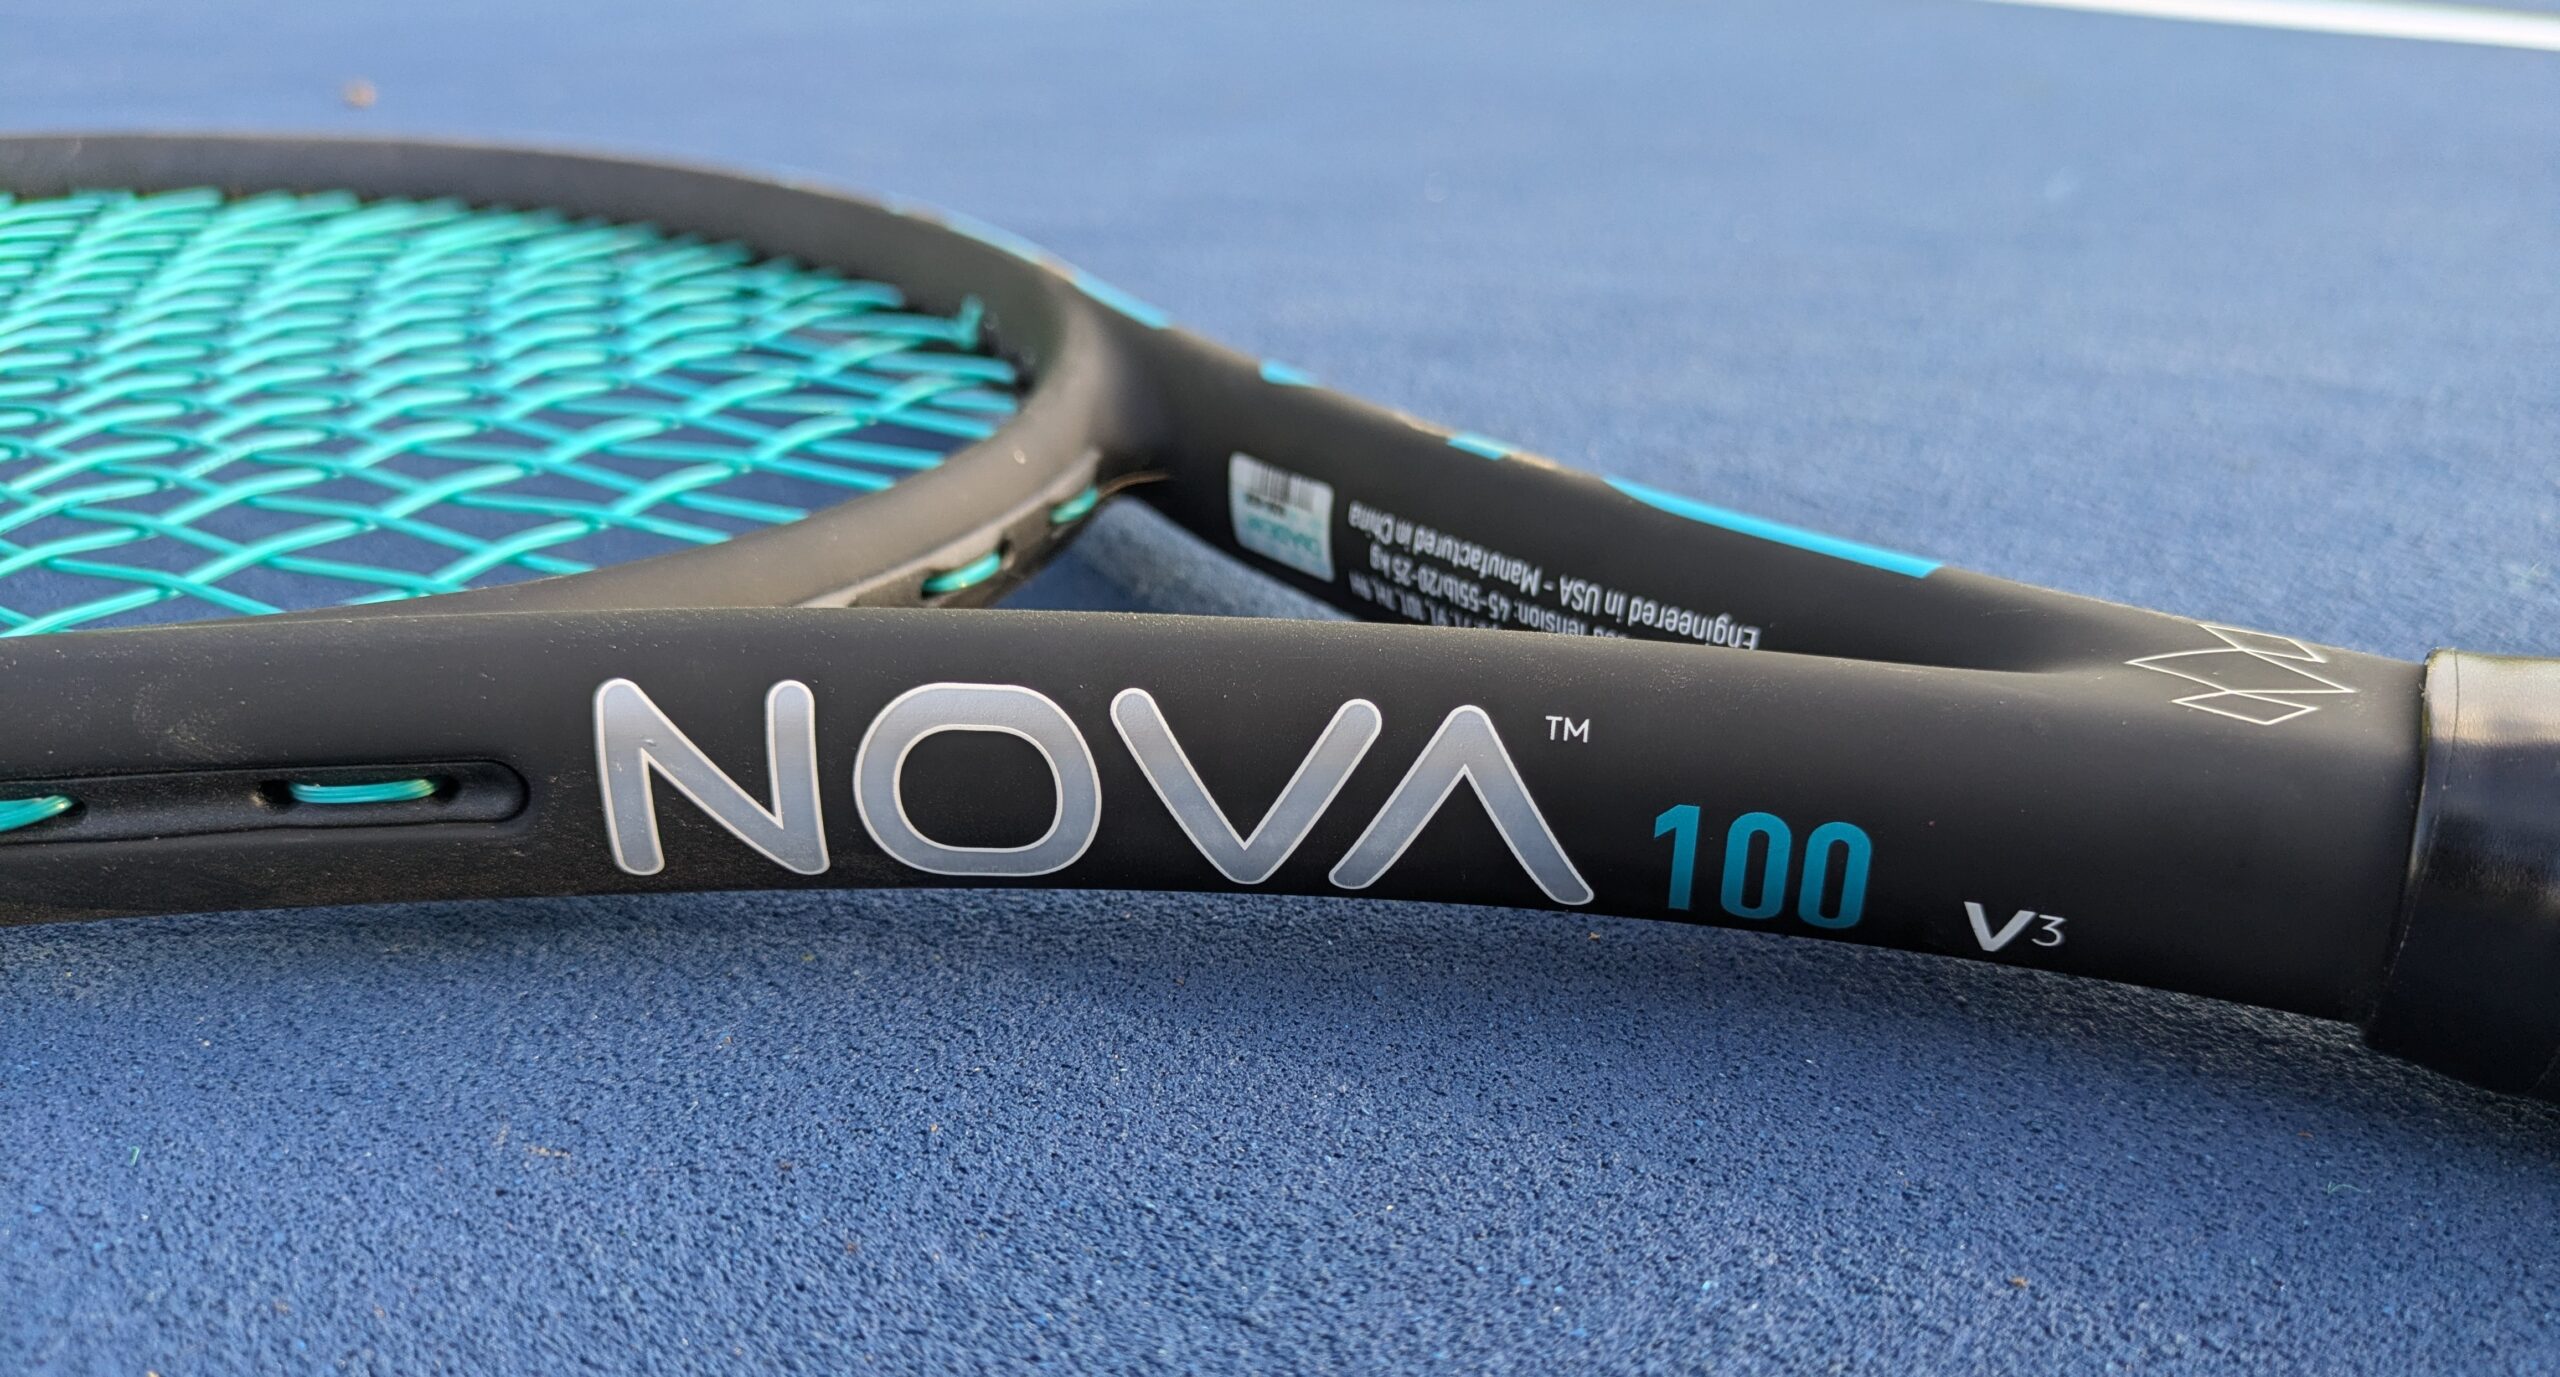 Diadem Nova V3 tennis racquet